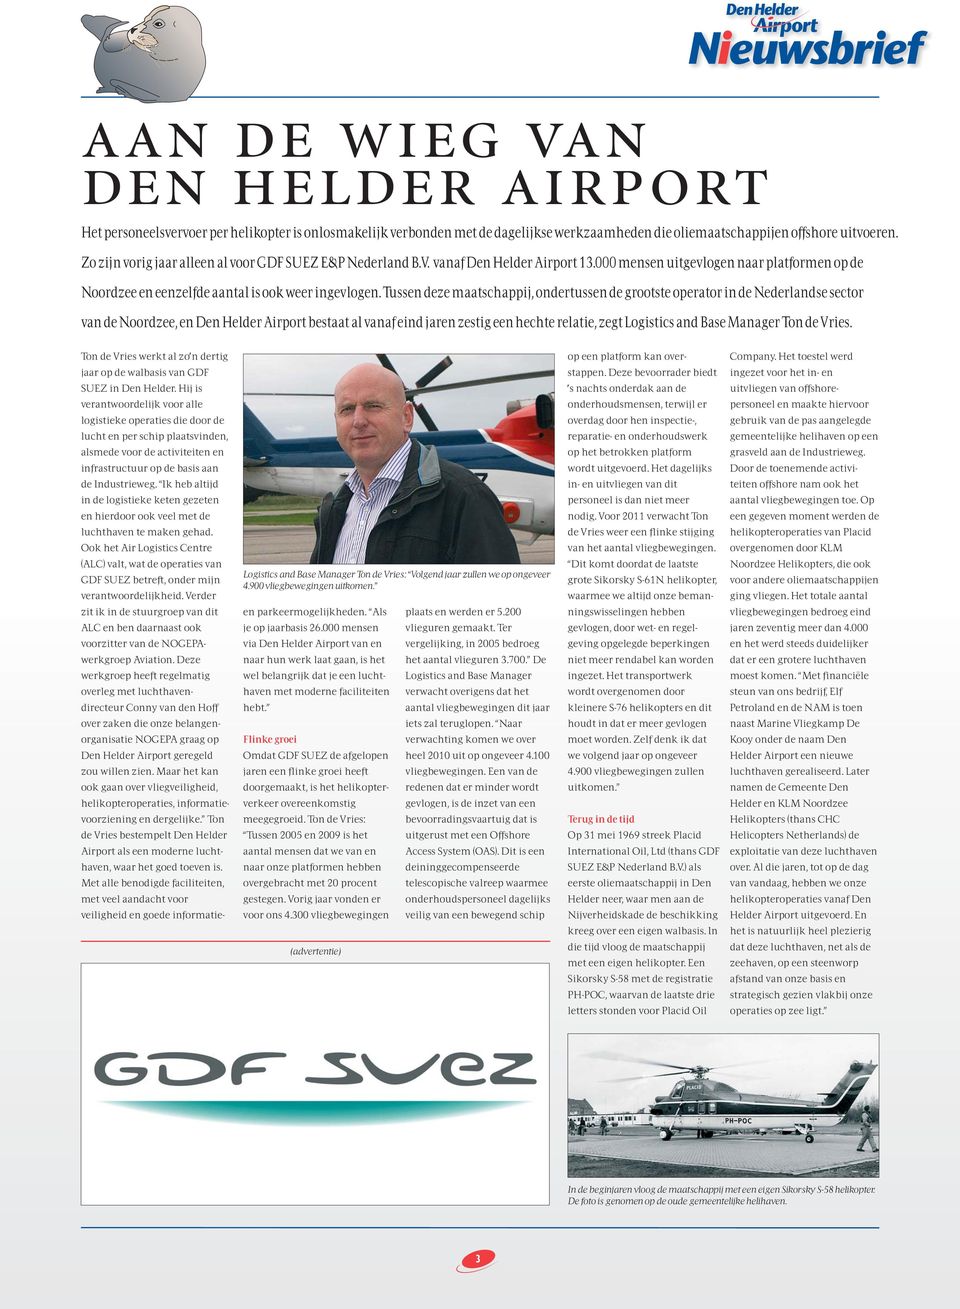 Tussen deze maatschappij, ondertussen de grootste operator in de Nederlandse sector van de Noordzee, en Den Helder Airport bestaat al vanaf eind jaren zestig een hechte relatie, zegt Logistics and